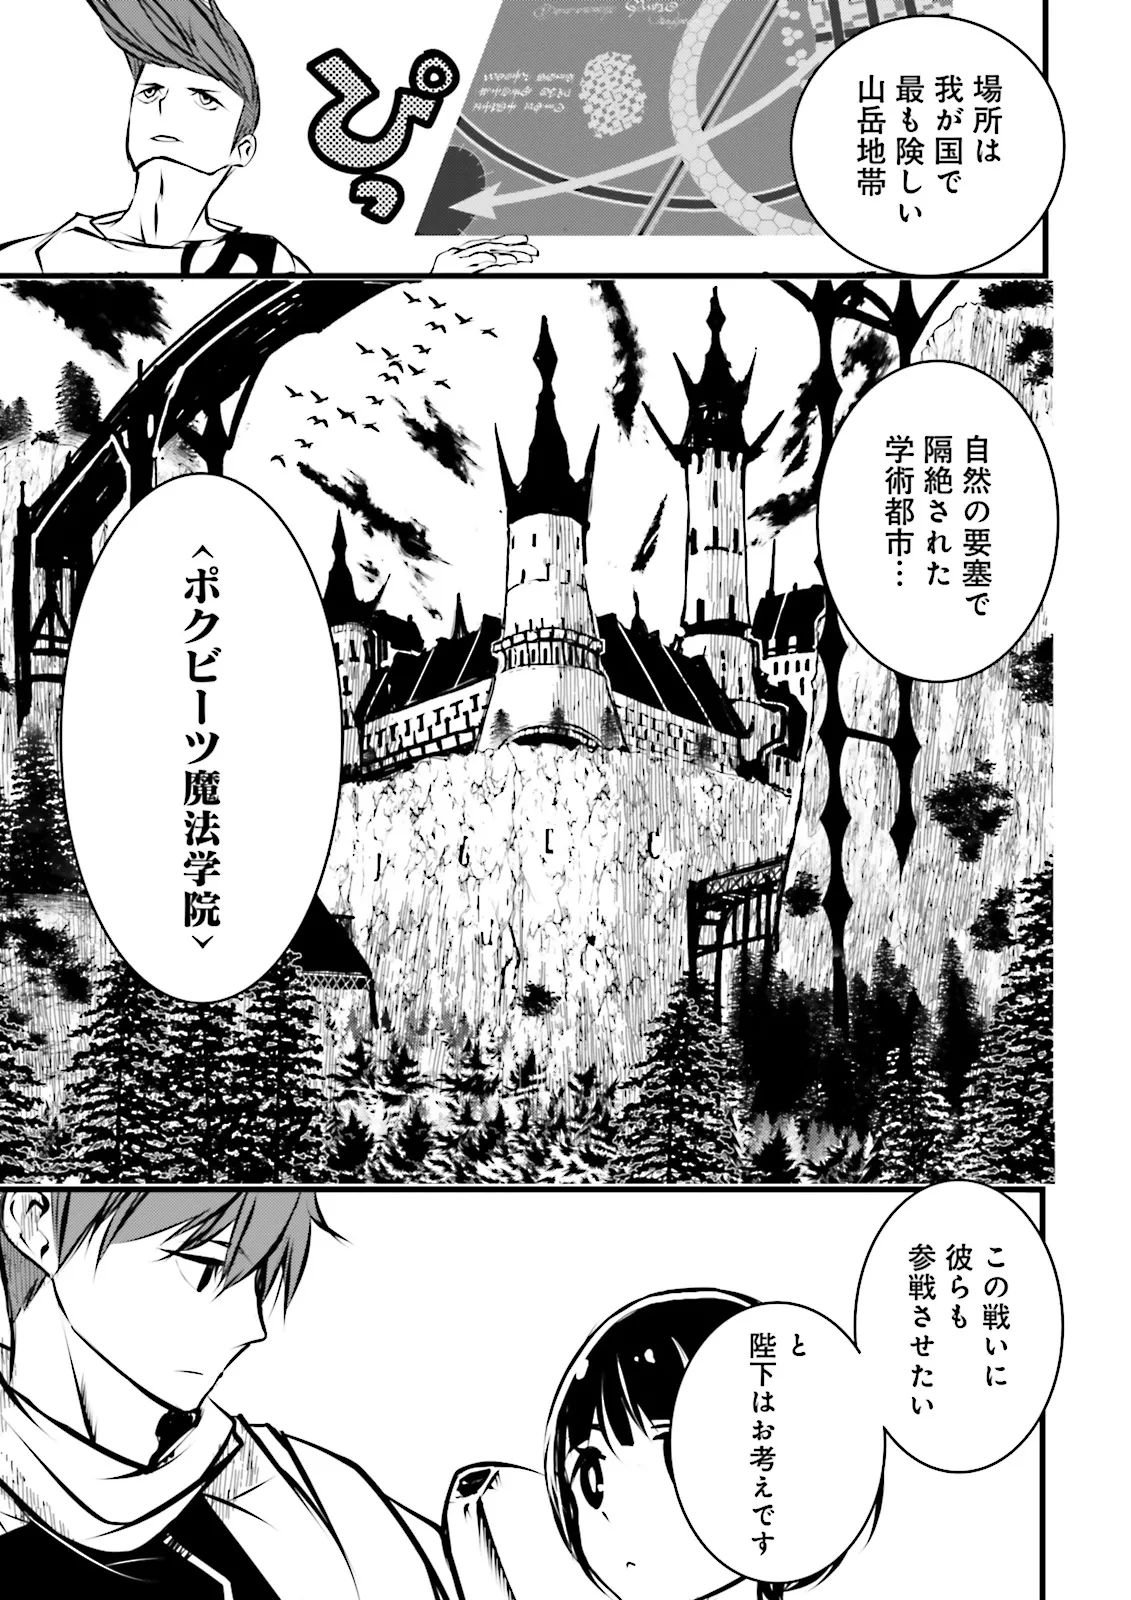 Sukiru Ga Nakereba Level wo Ageru ~ 99 Ga Kansuto No Sekai De Reberu 800 Man Kara Sutato ~ - Chapter 37.1 - Page 7